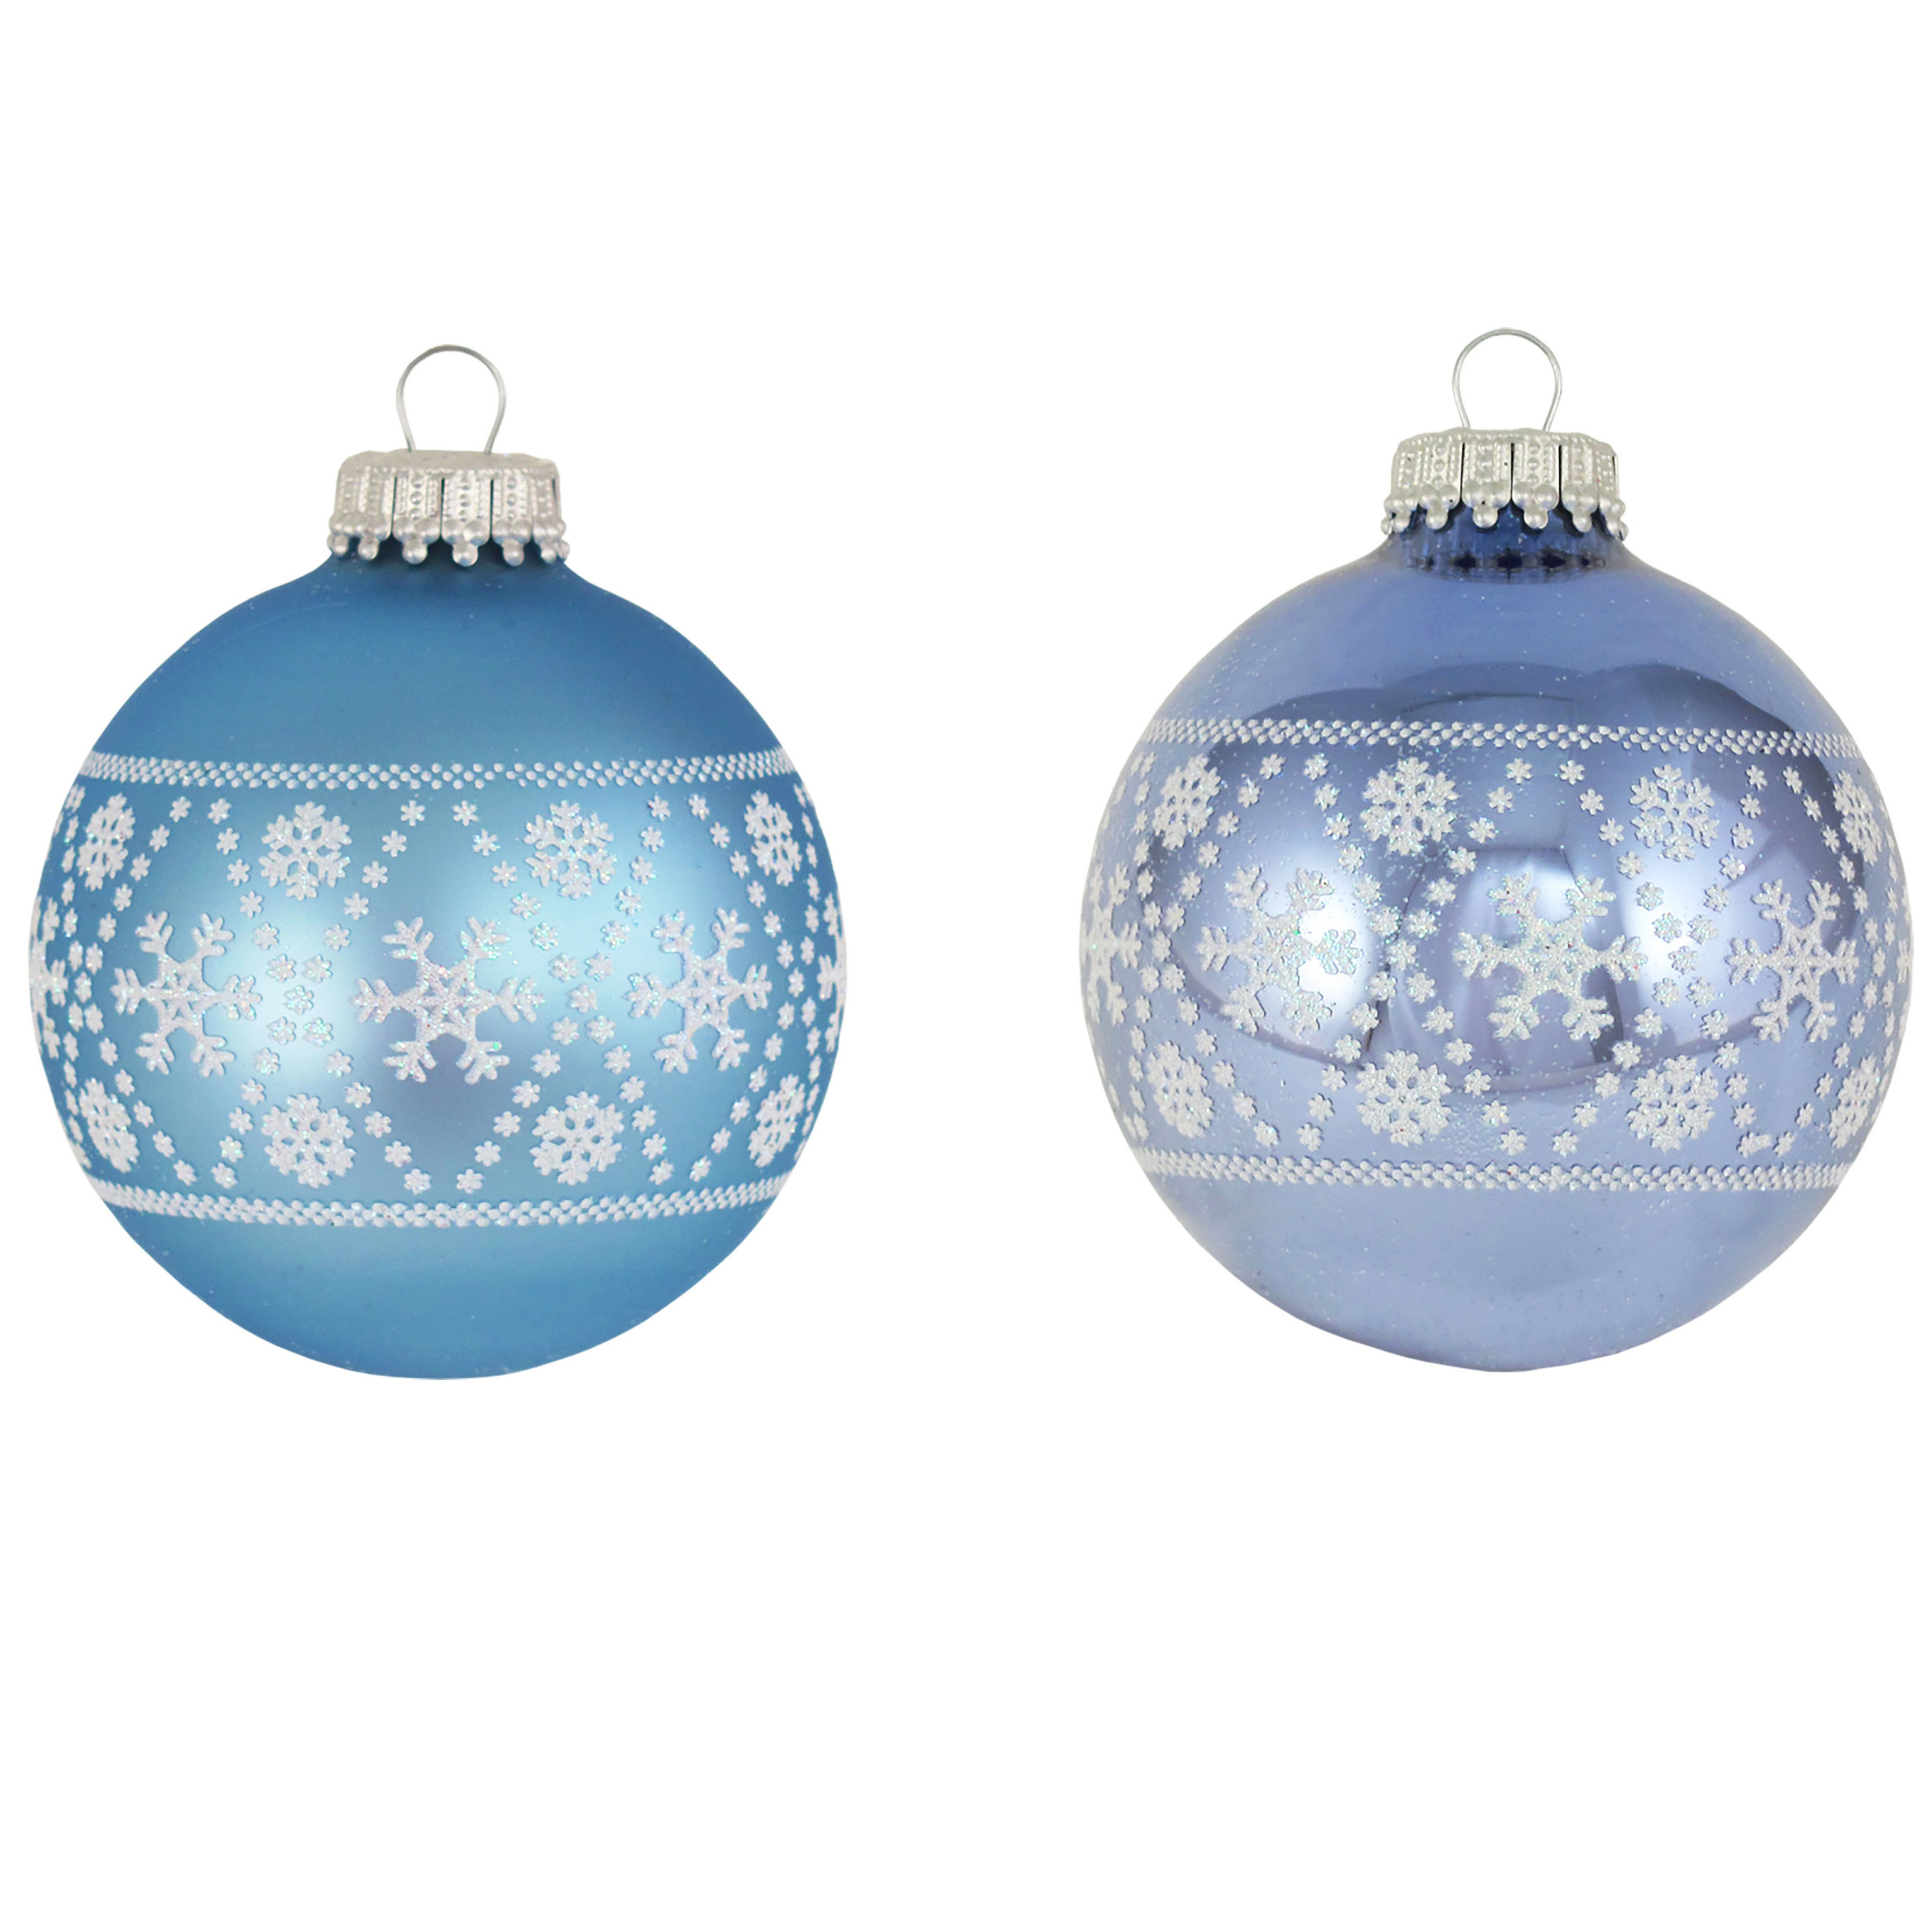 8x Glazen ijsblauwe-lichtblauwe kerstballen met witte decoratie 7 cm